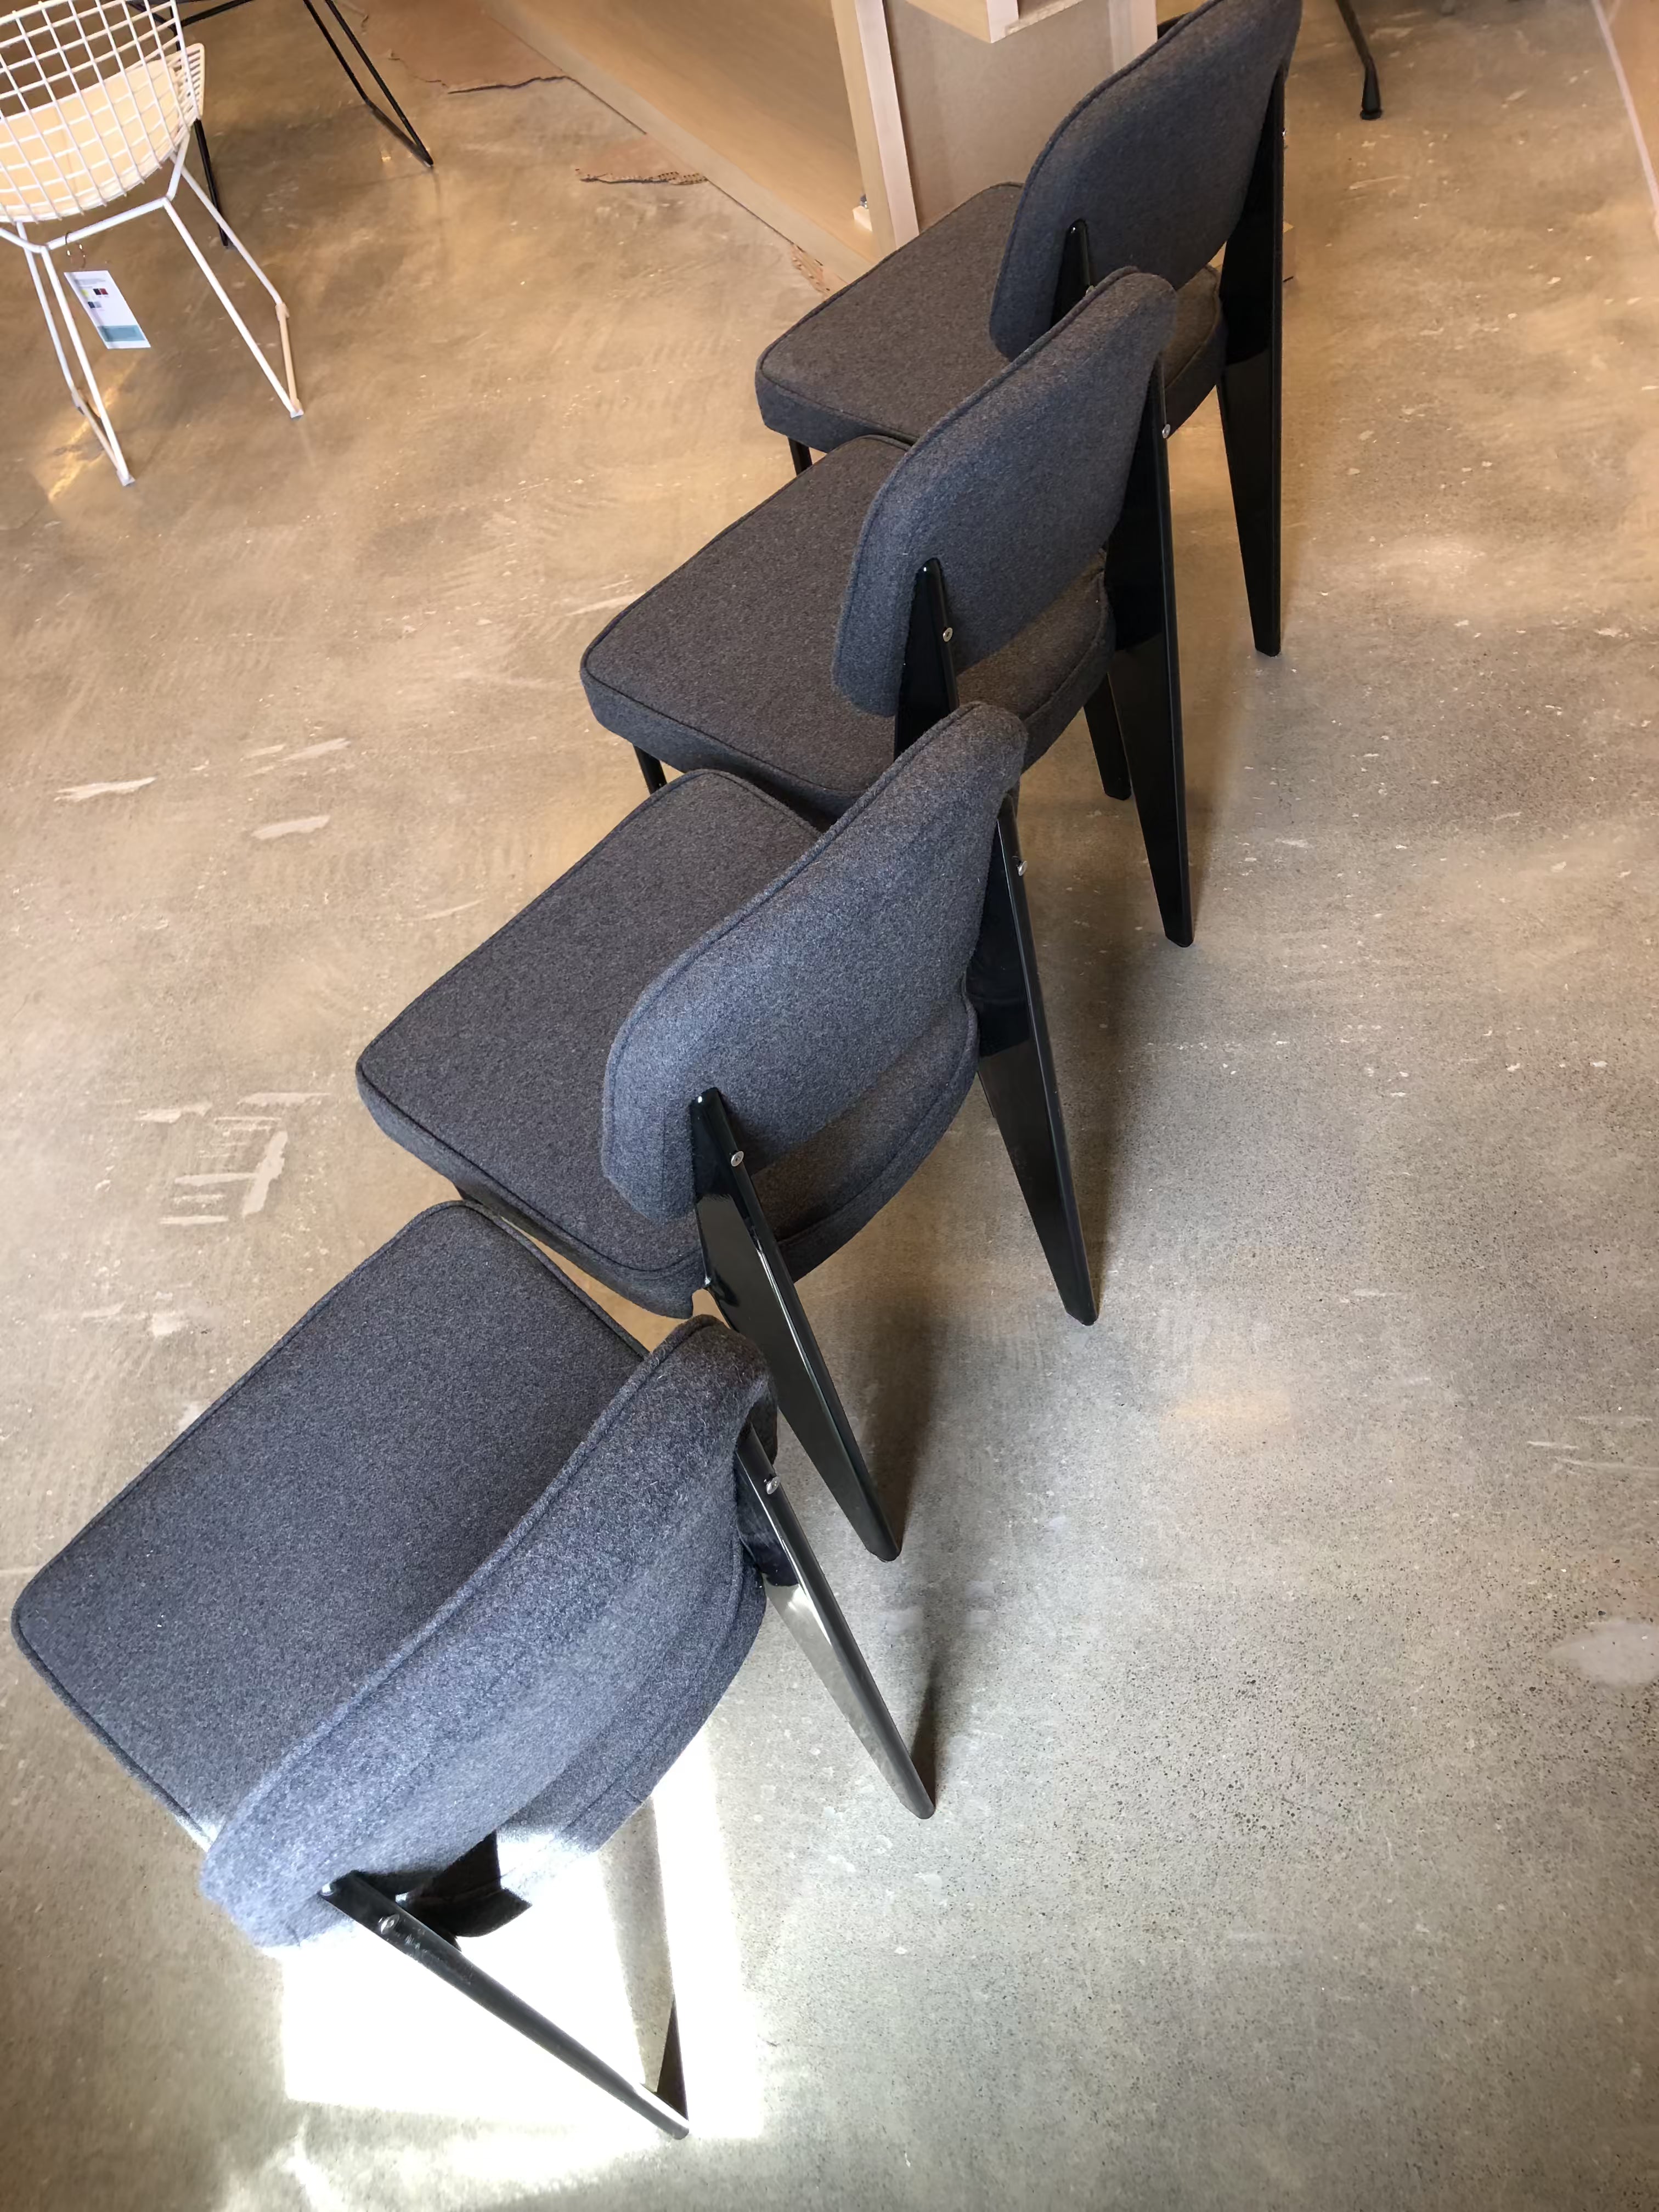 Floor Sample Standard Chair Upholstered